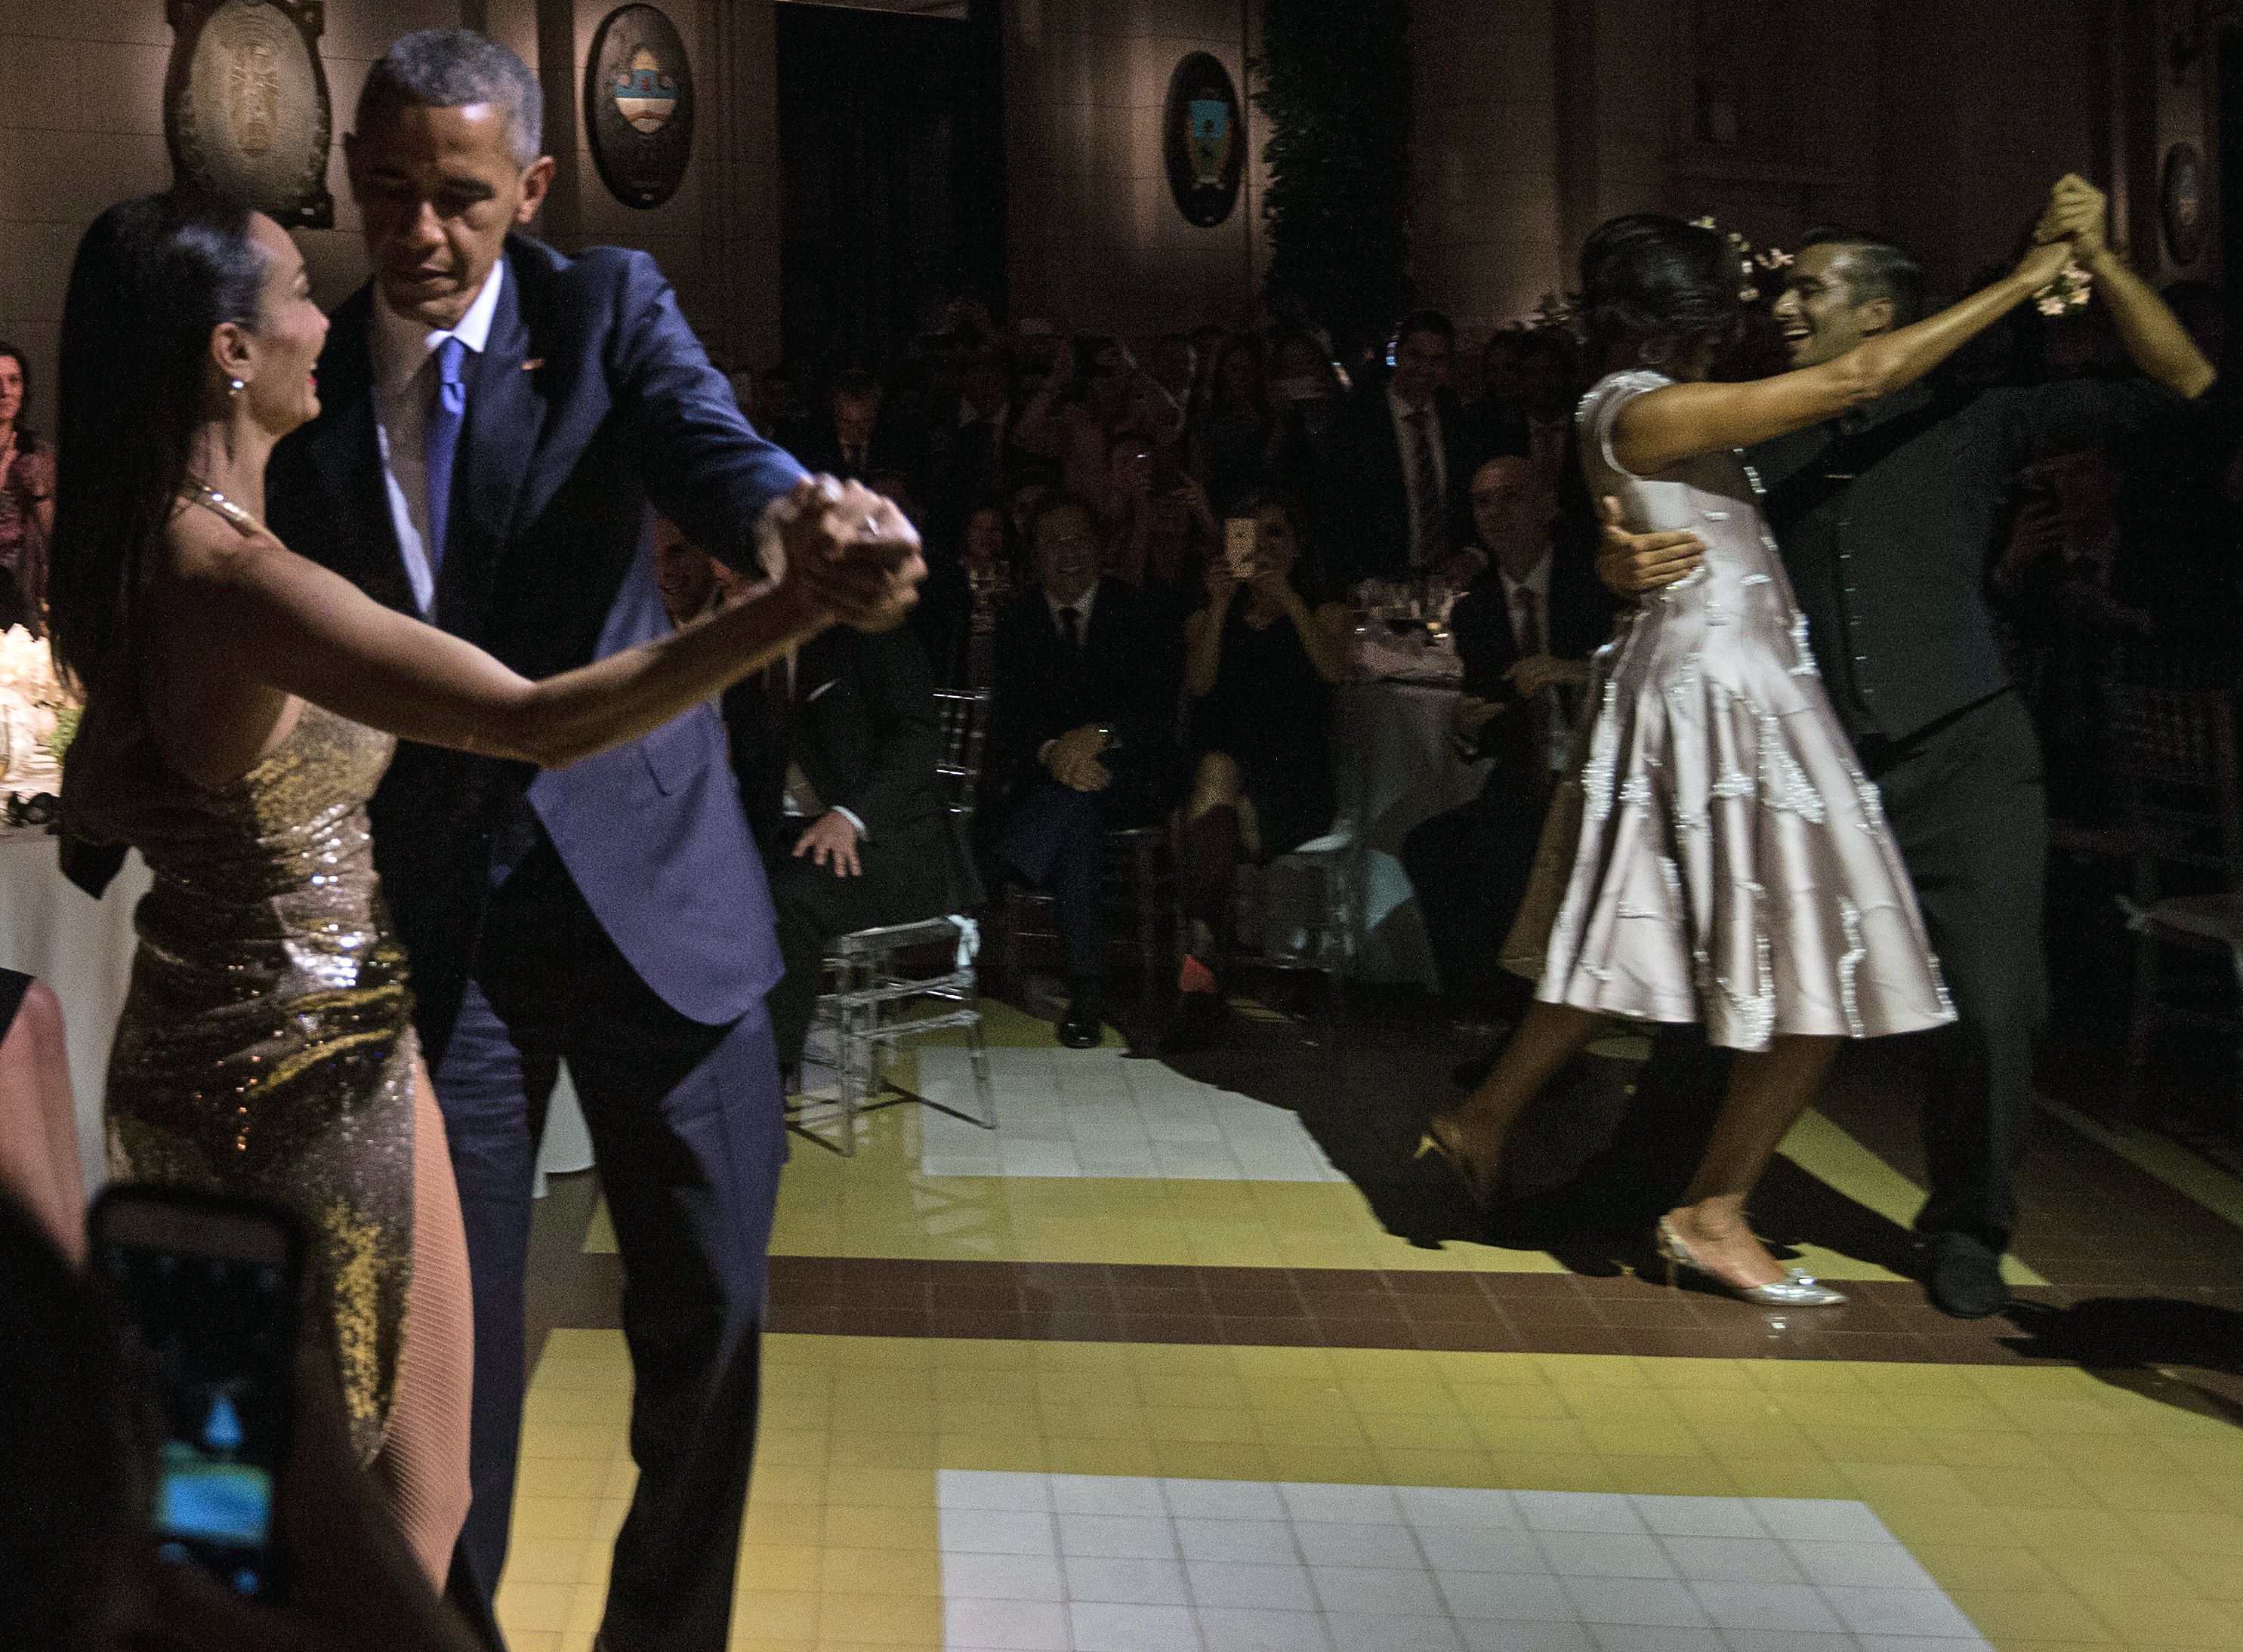 فيديو: أوباما يرقص "التانغو" مع حسناء أرجنتينية